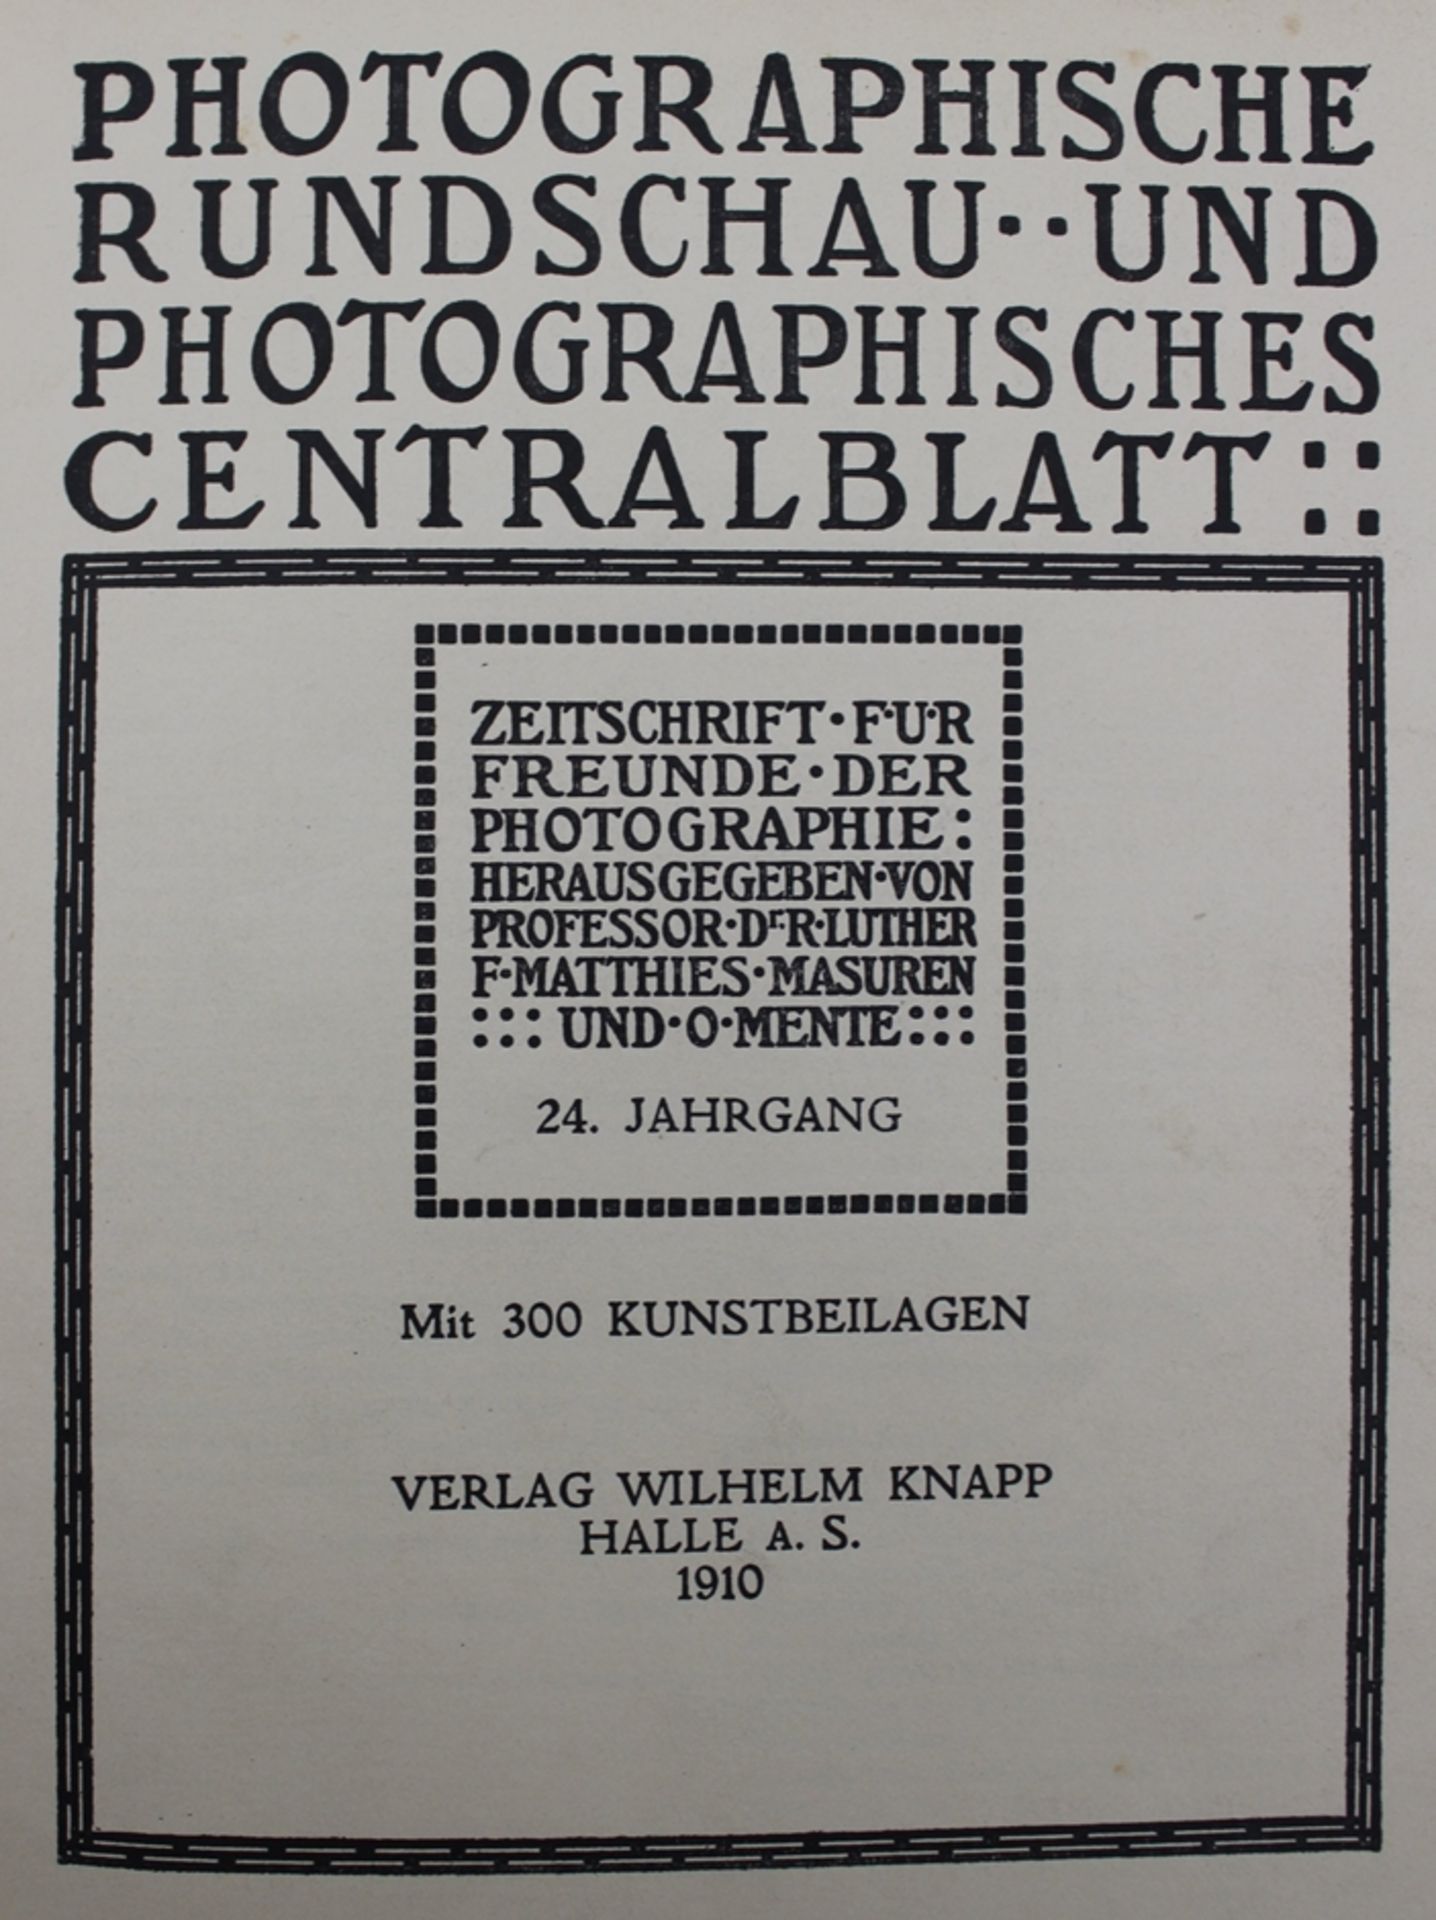 Photographische Rundschau und Photographisches Centralblatt, 24. Jahrgang, 1910, leichte Altersspur - Bild 2 aus 4